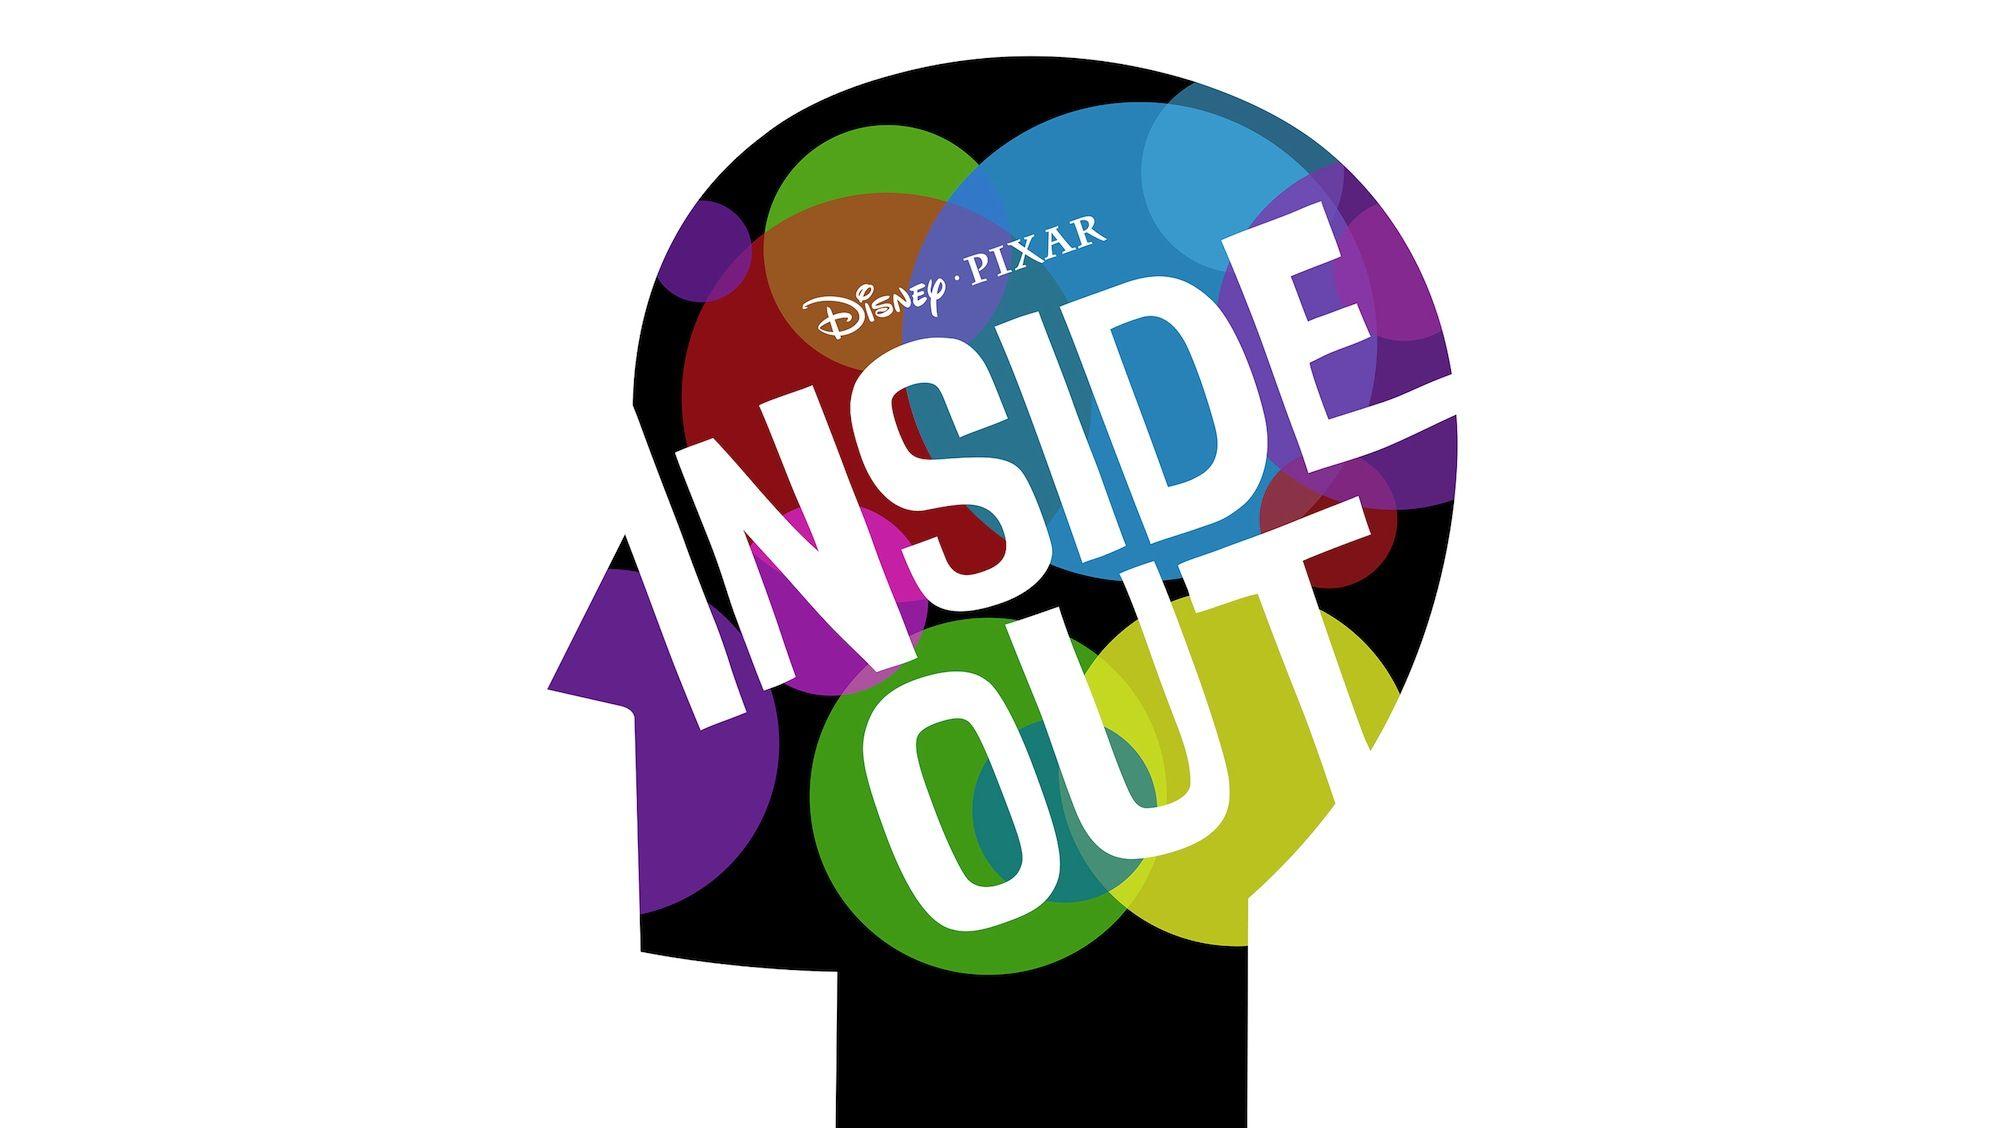 Disney Pixar Inside Out Logo - Wallpaper : logo, Inside Out, 2015, brand, font, product, pixar ...